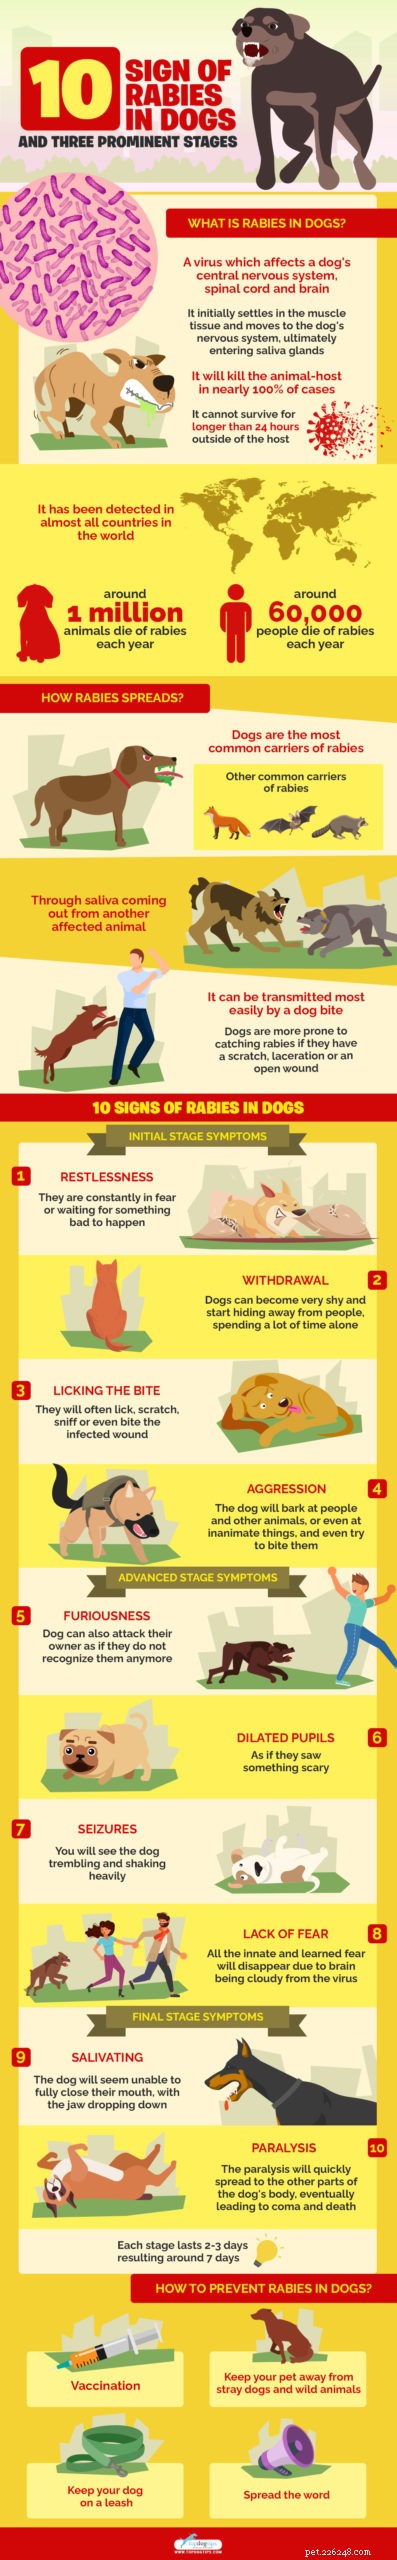 10 sinais de raiva em cães e três estágios proeminentes